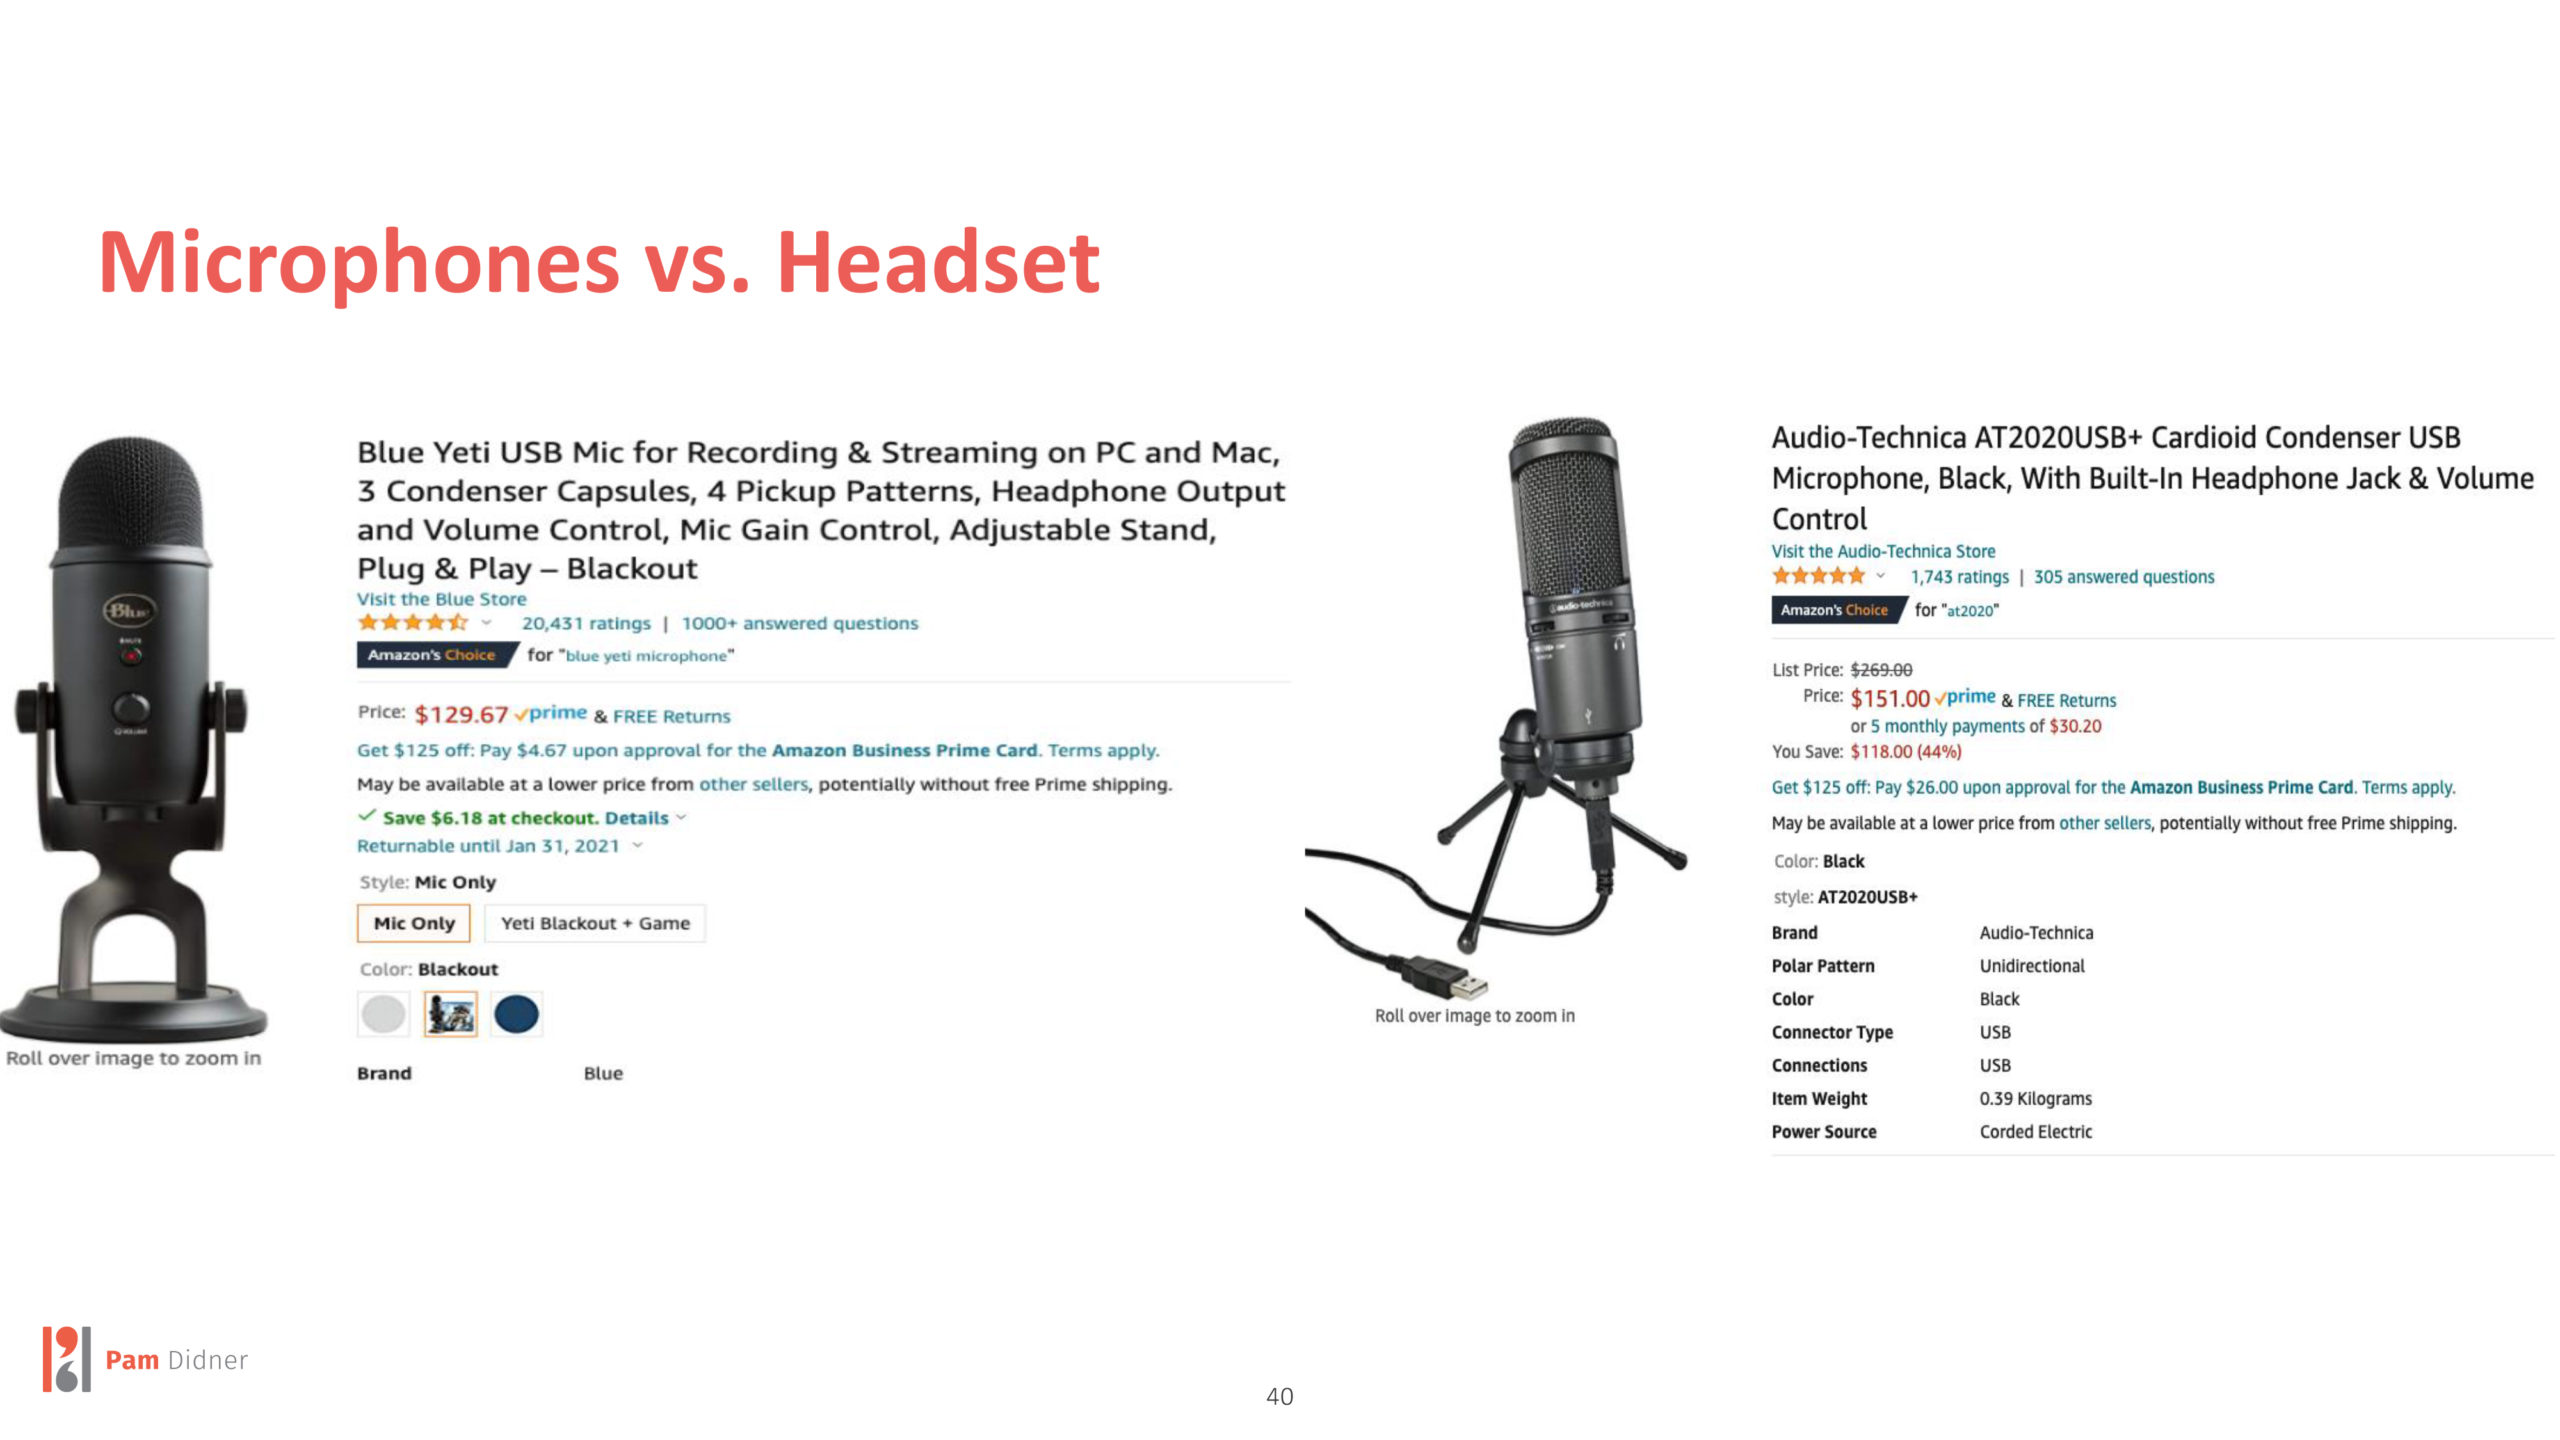 Microphones vs Headset